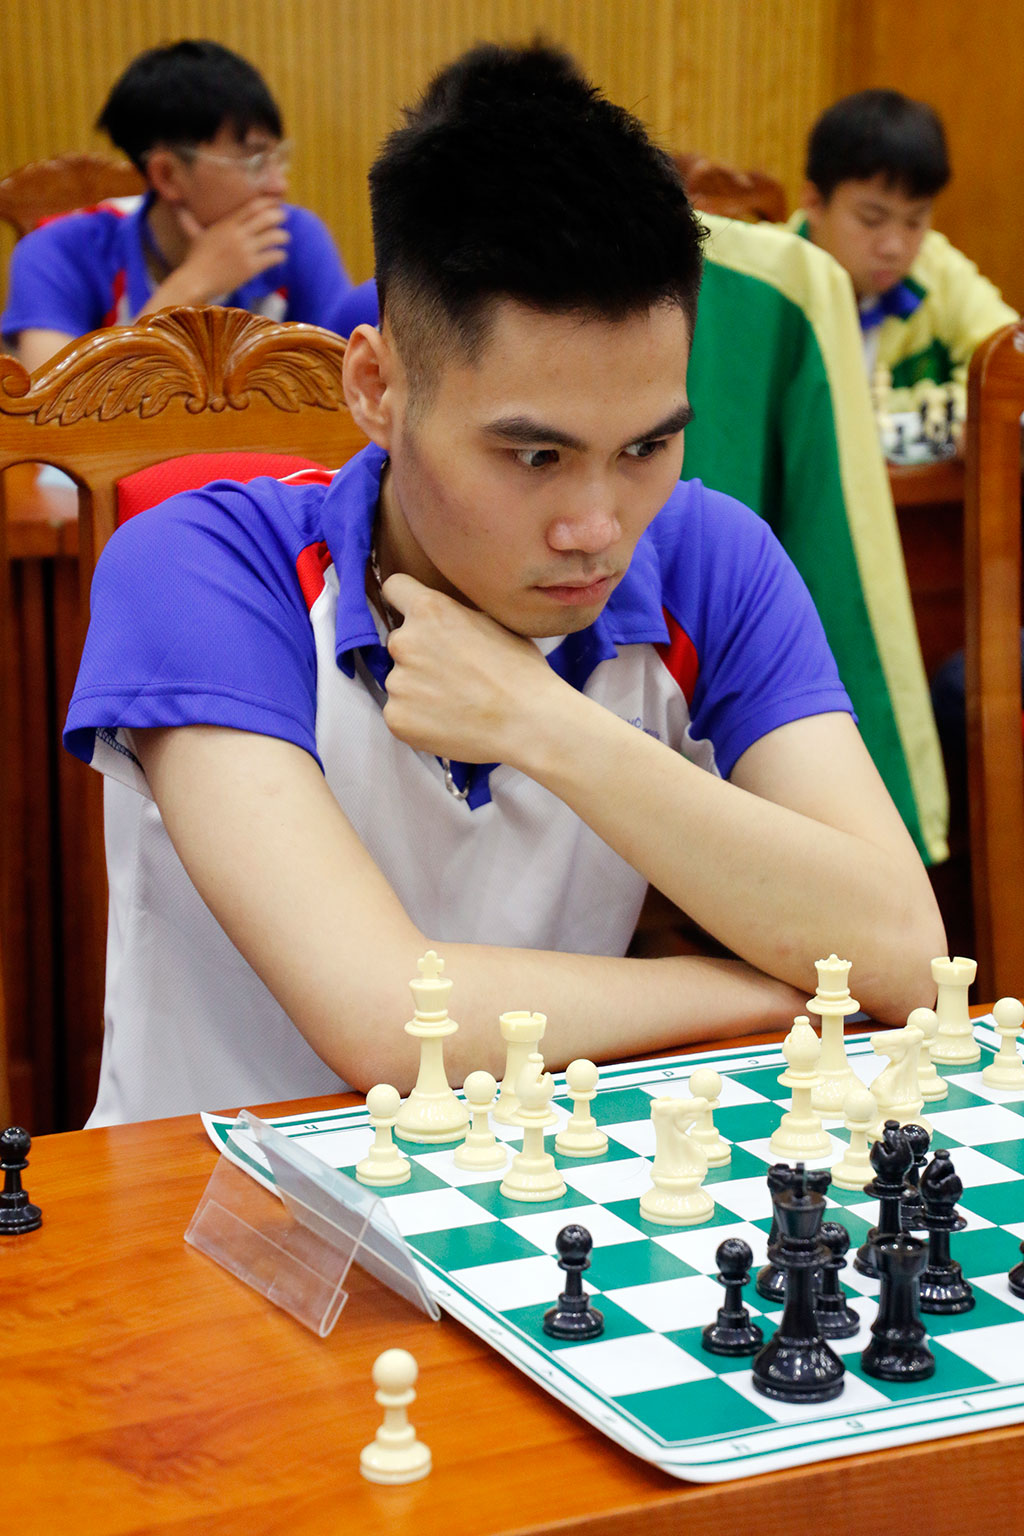 VTV Bình Điền Long An tranh hạng 5-8 giải châu Á, Trần Tuấn Minh dẫn đầu cờ tiêu chuẩn giải toàn quốc